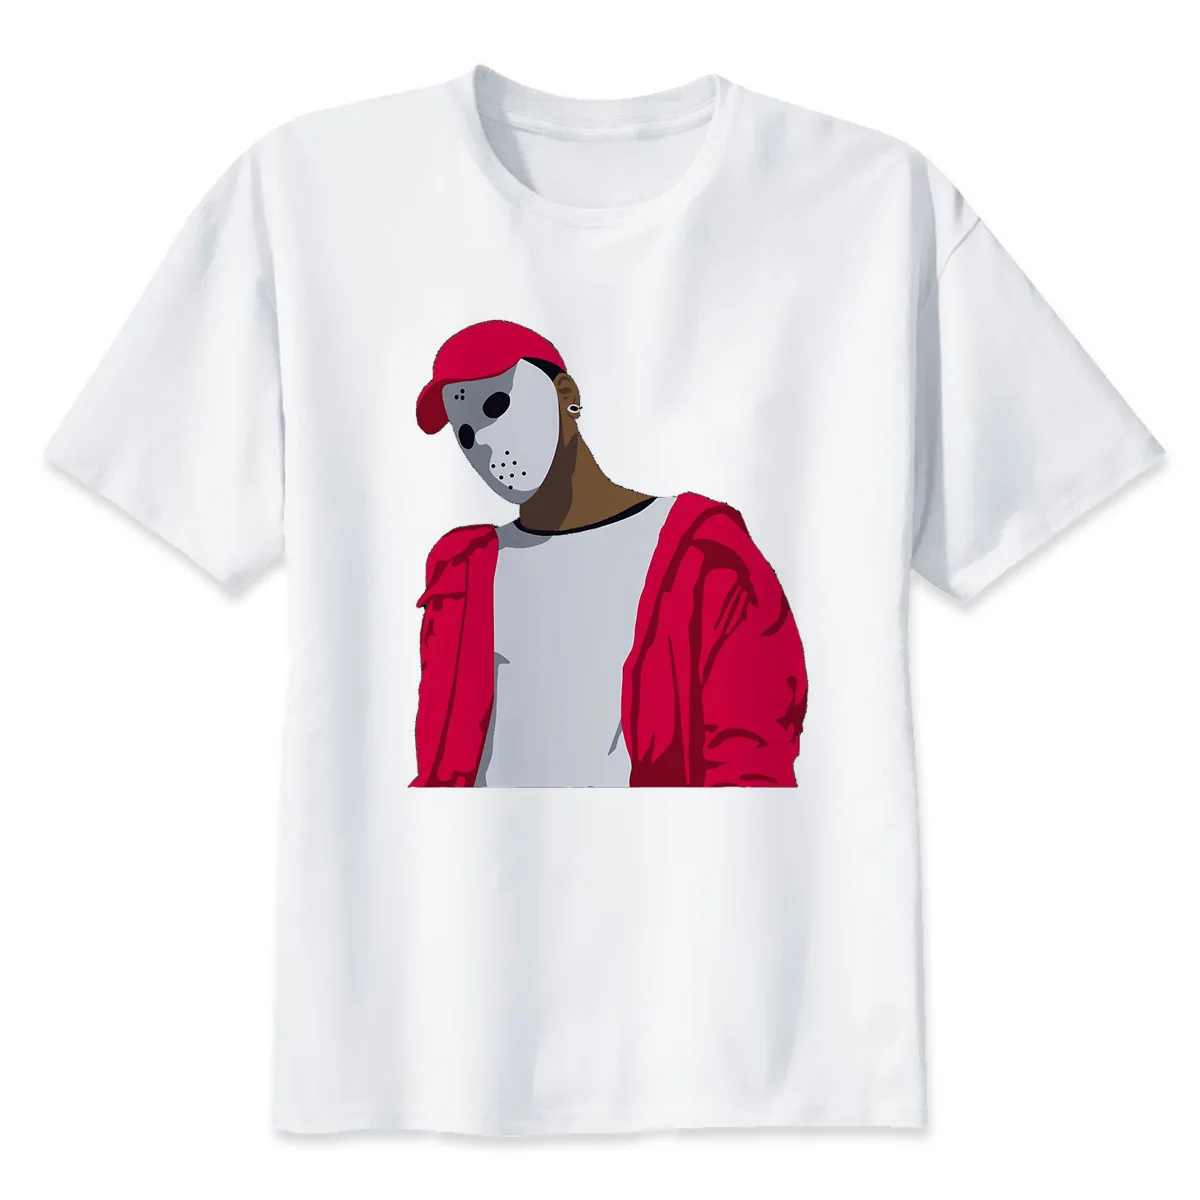 Новое поступление, Мужская футболка в стиле хип-хоп Xxxtentacion, футболки с рэпером, белая футболка, Забавный принт с героями мультфильмов для мужчин и женщин - Цвет: 4357